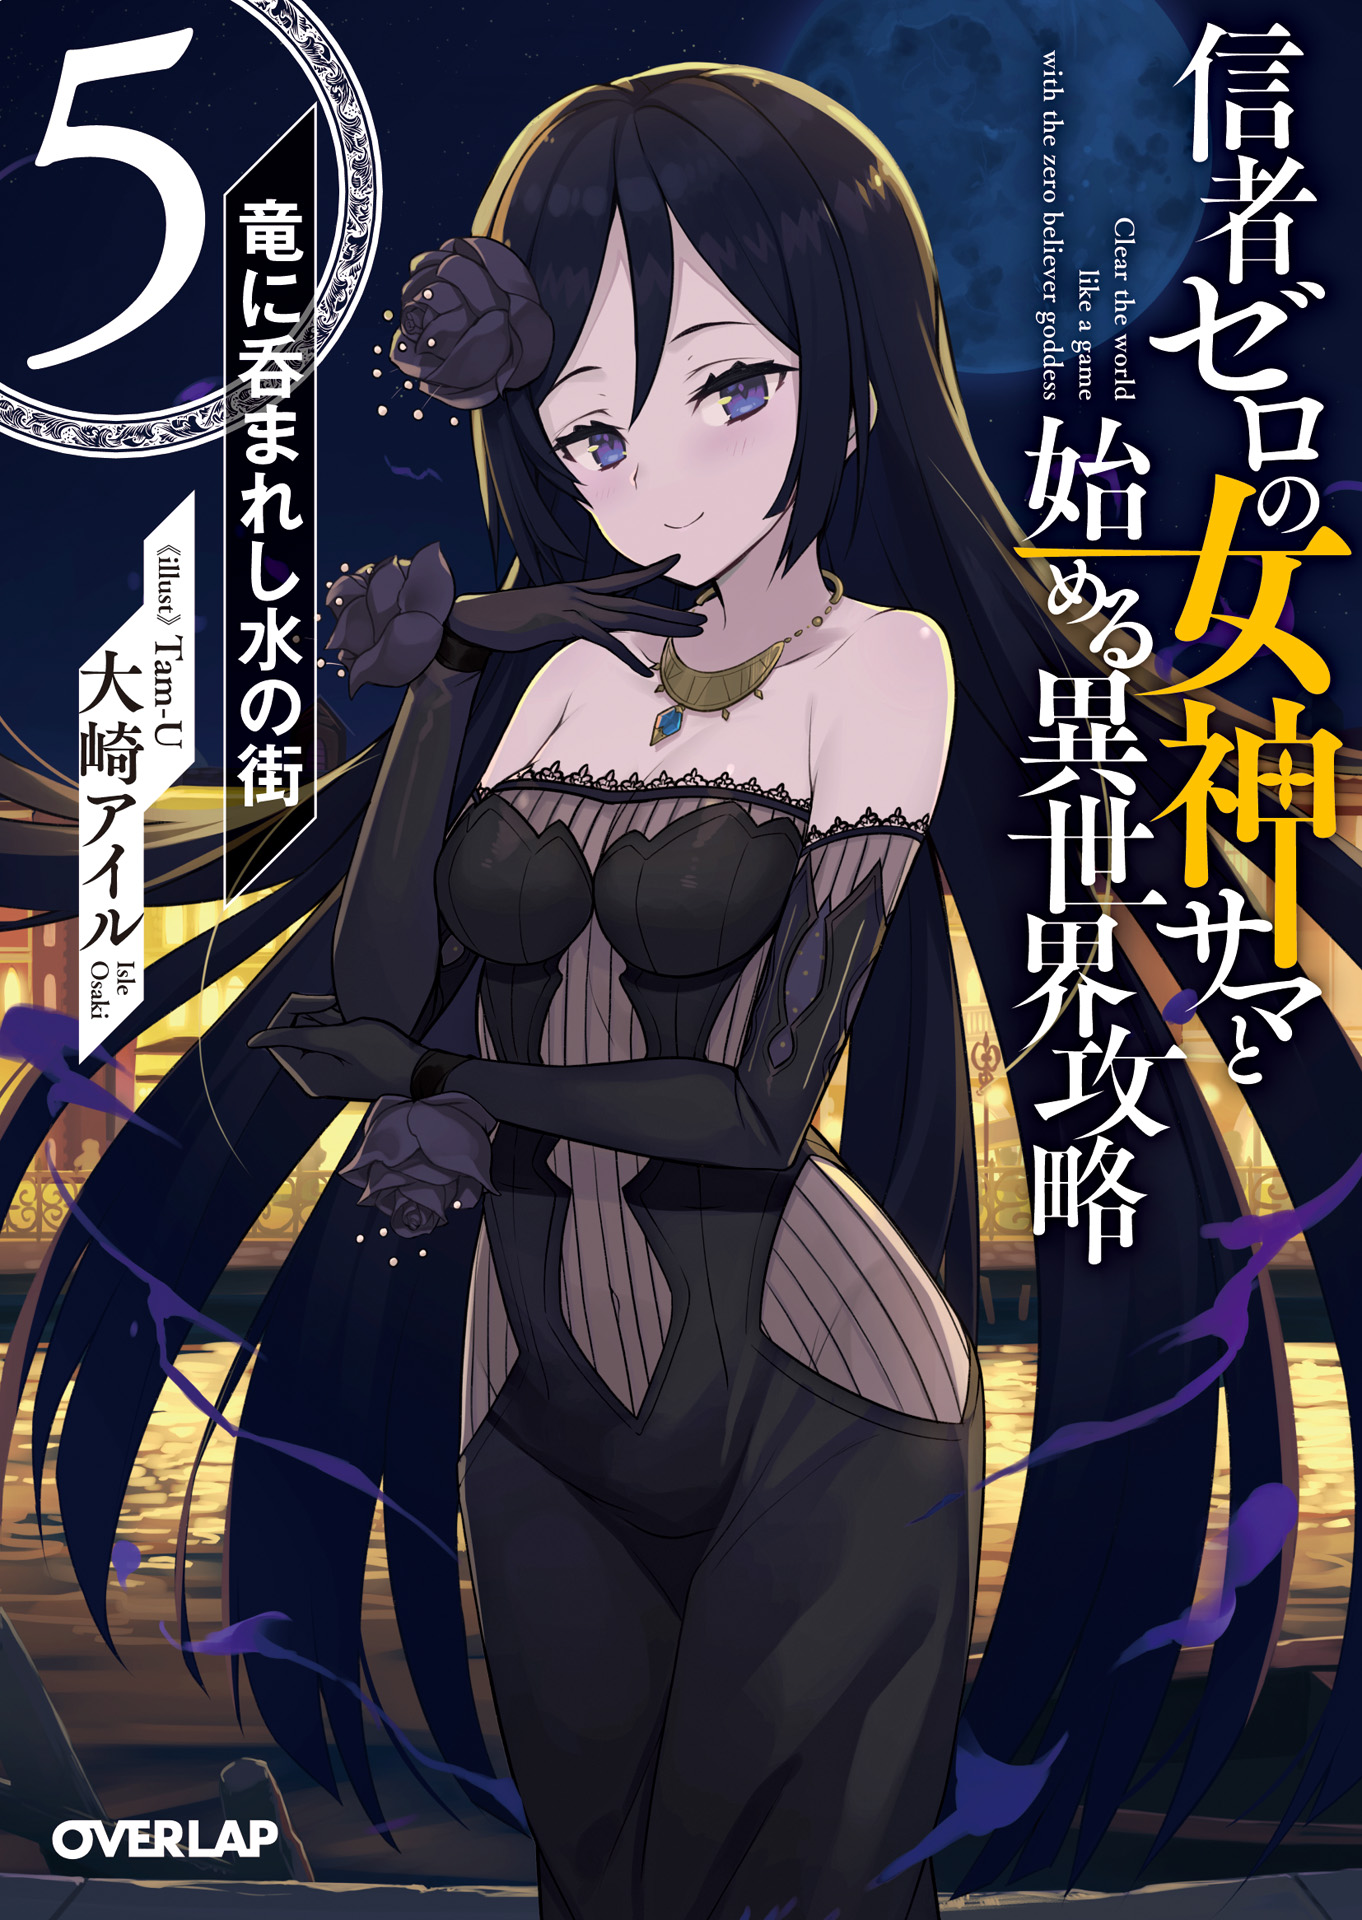 Mahoutsukai Reimeiki – Novel do autor de Zero Kara Hajimeru vai ter anime -  IntoxiAnime